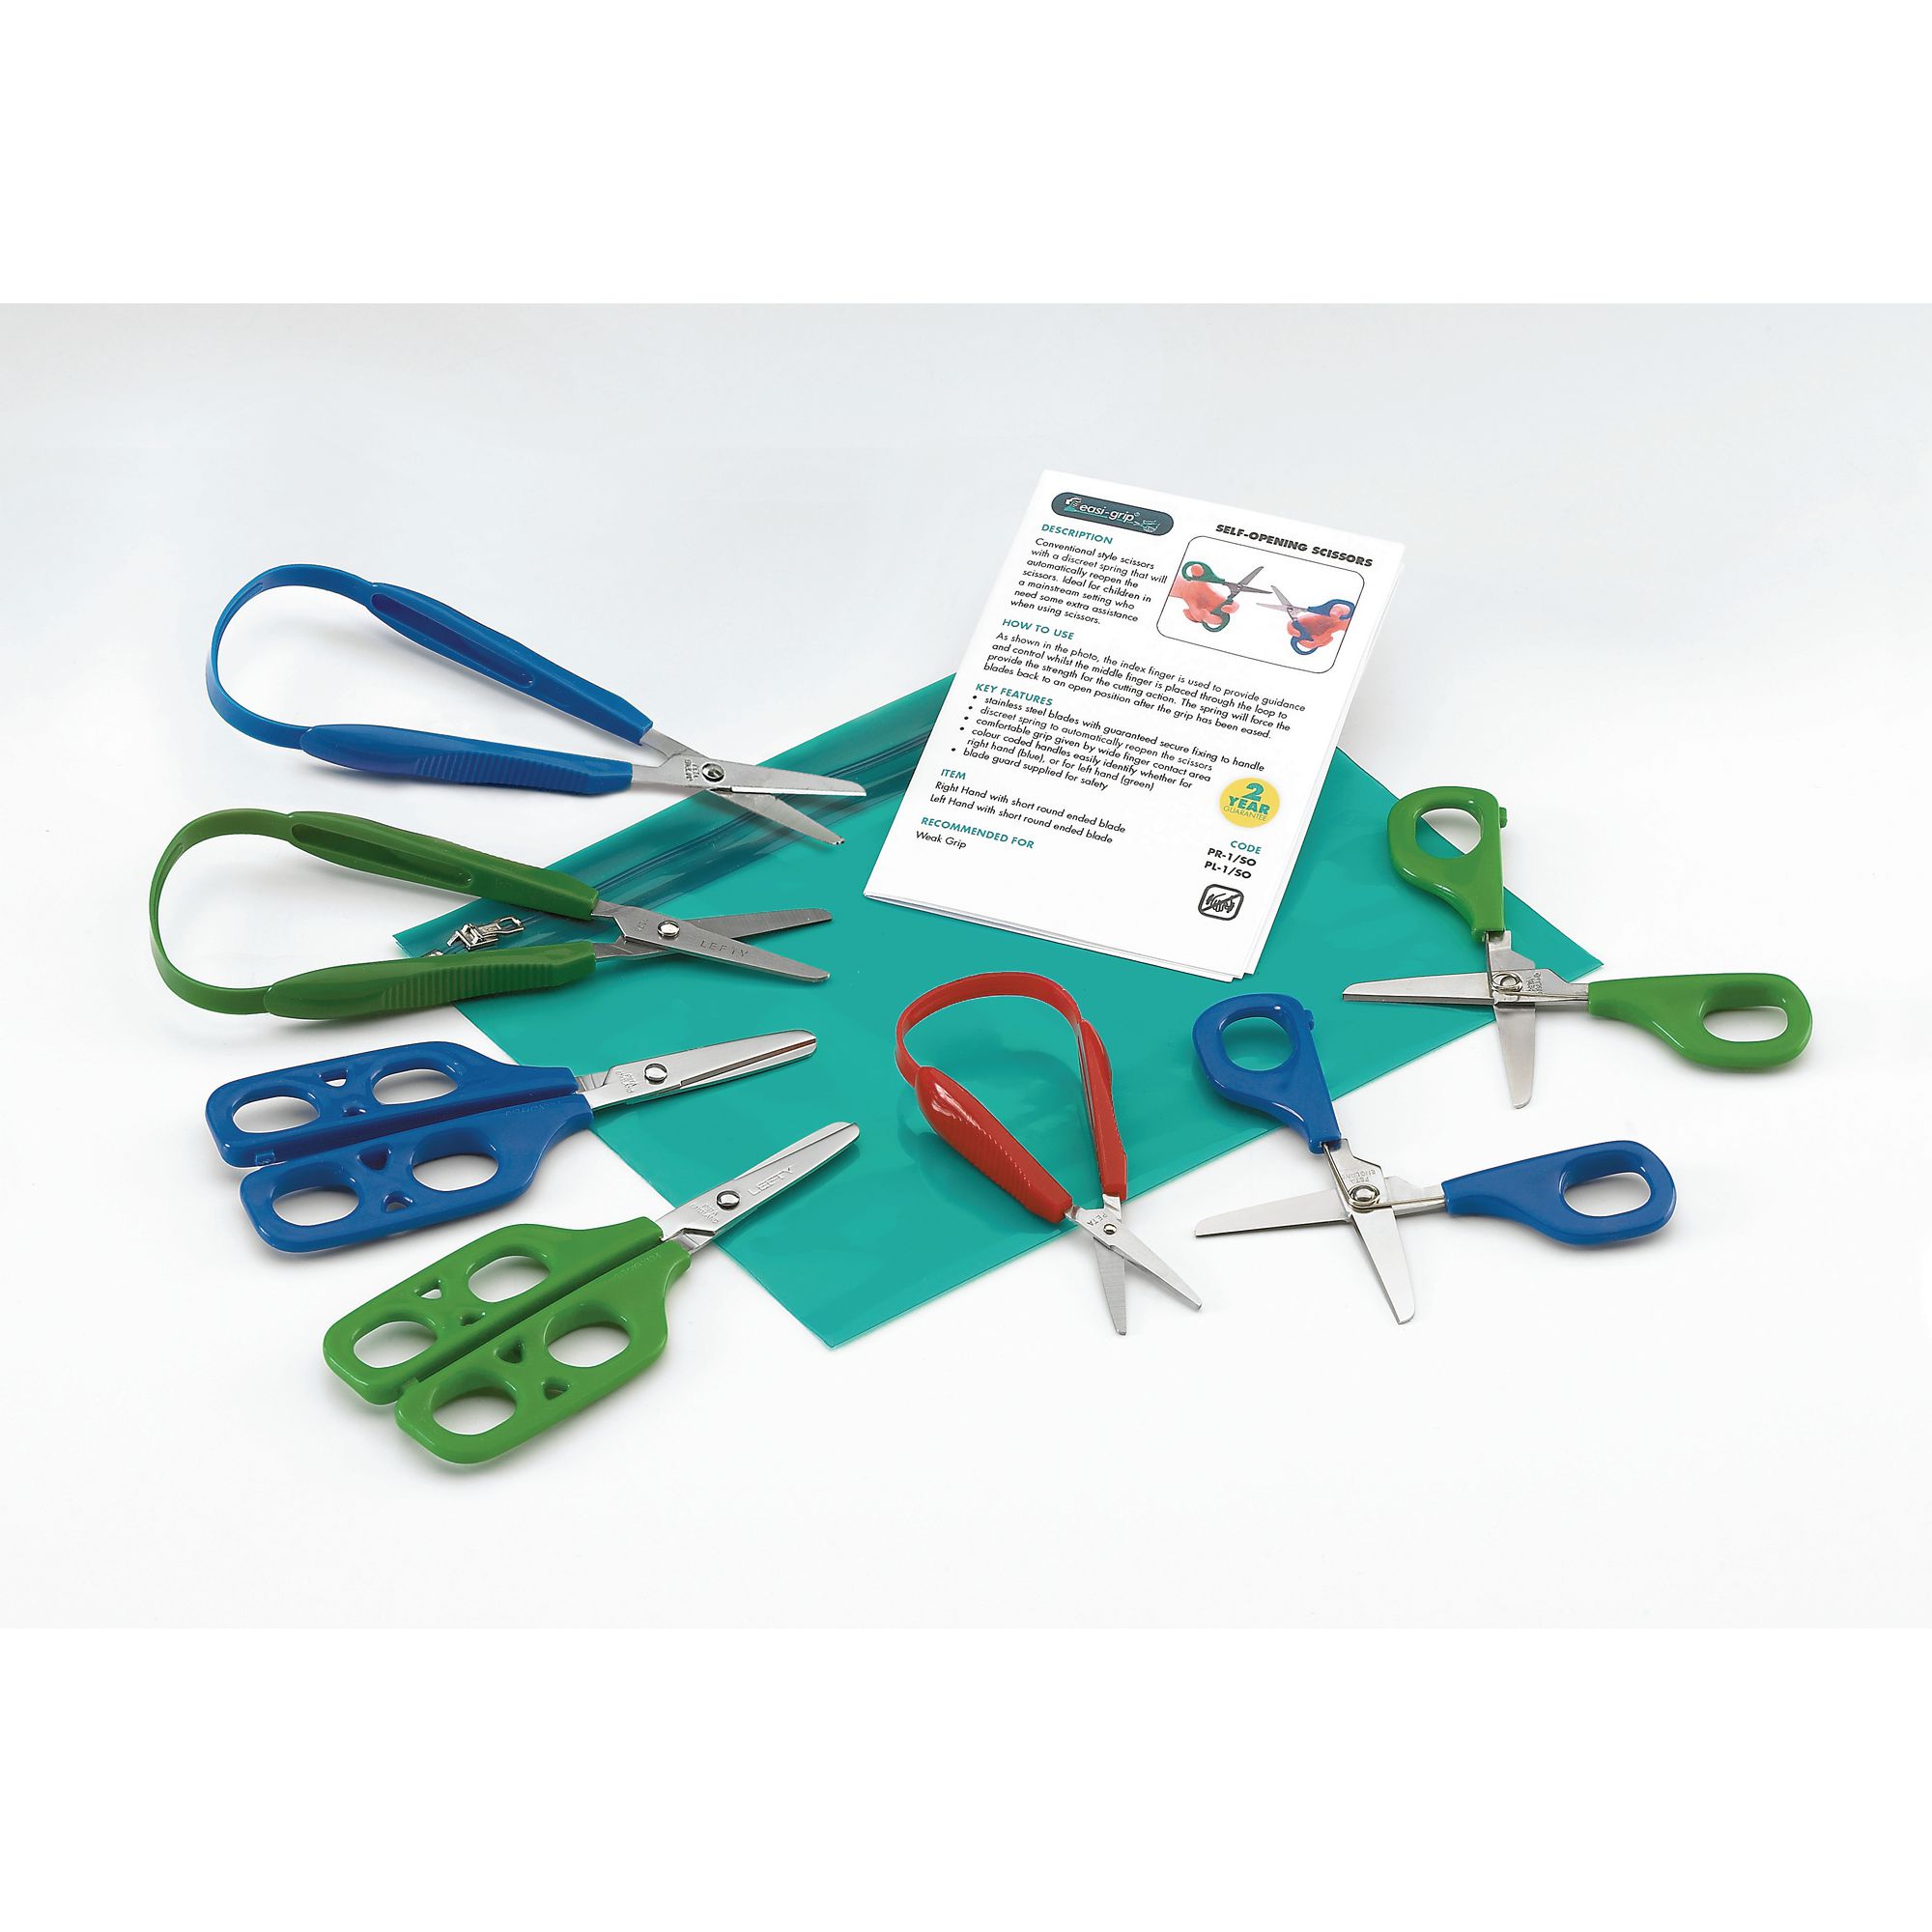 Long Loop Easi-Grip Scissors | Easy Grip Scissors for Children with Autism